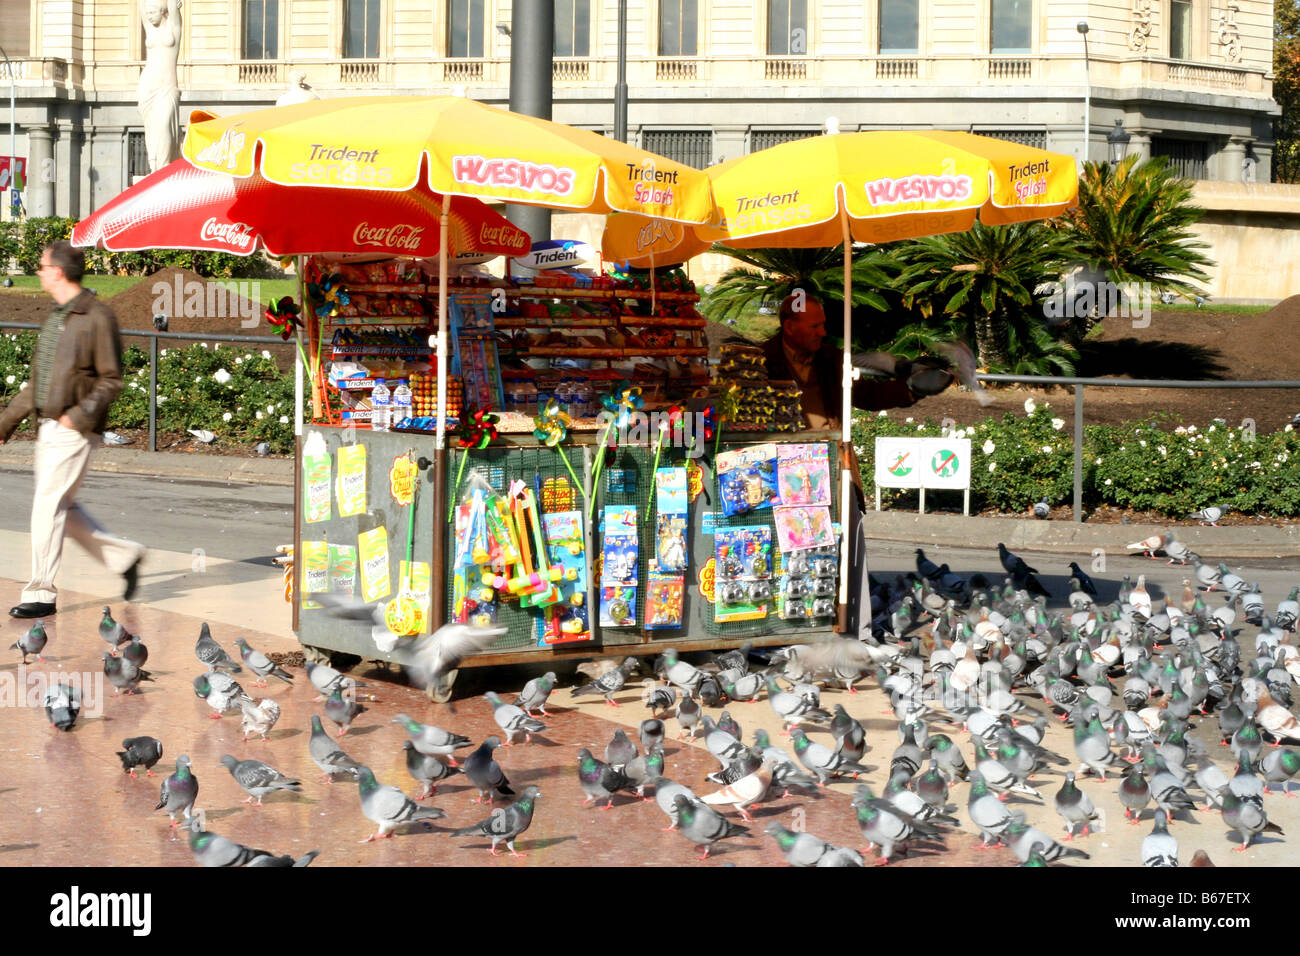 ein Stall mit Snacks, Spielzeug und Paniermehl für die Tauben in der Plaza Catalunya, Barcelona, Spanien Stockfoto